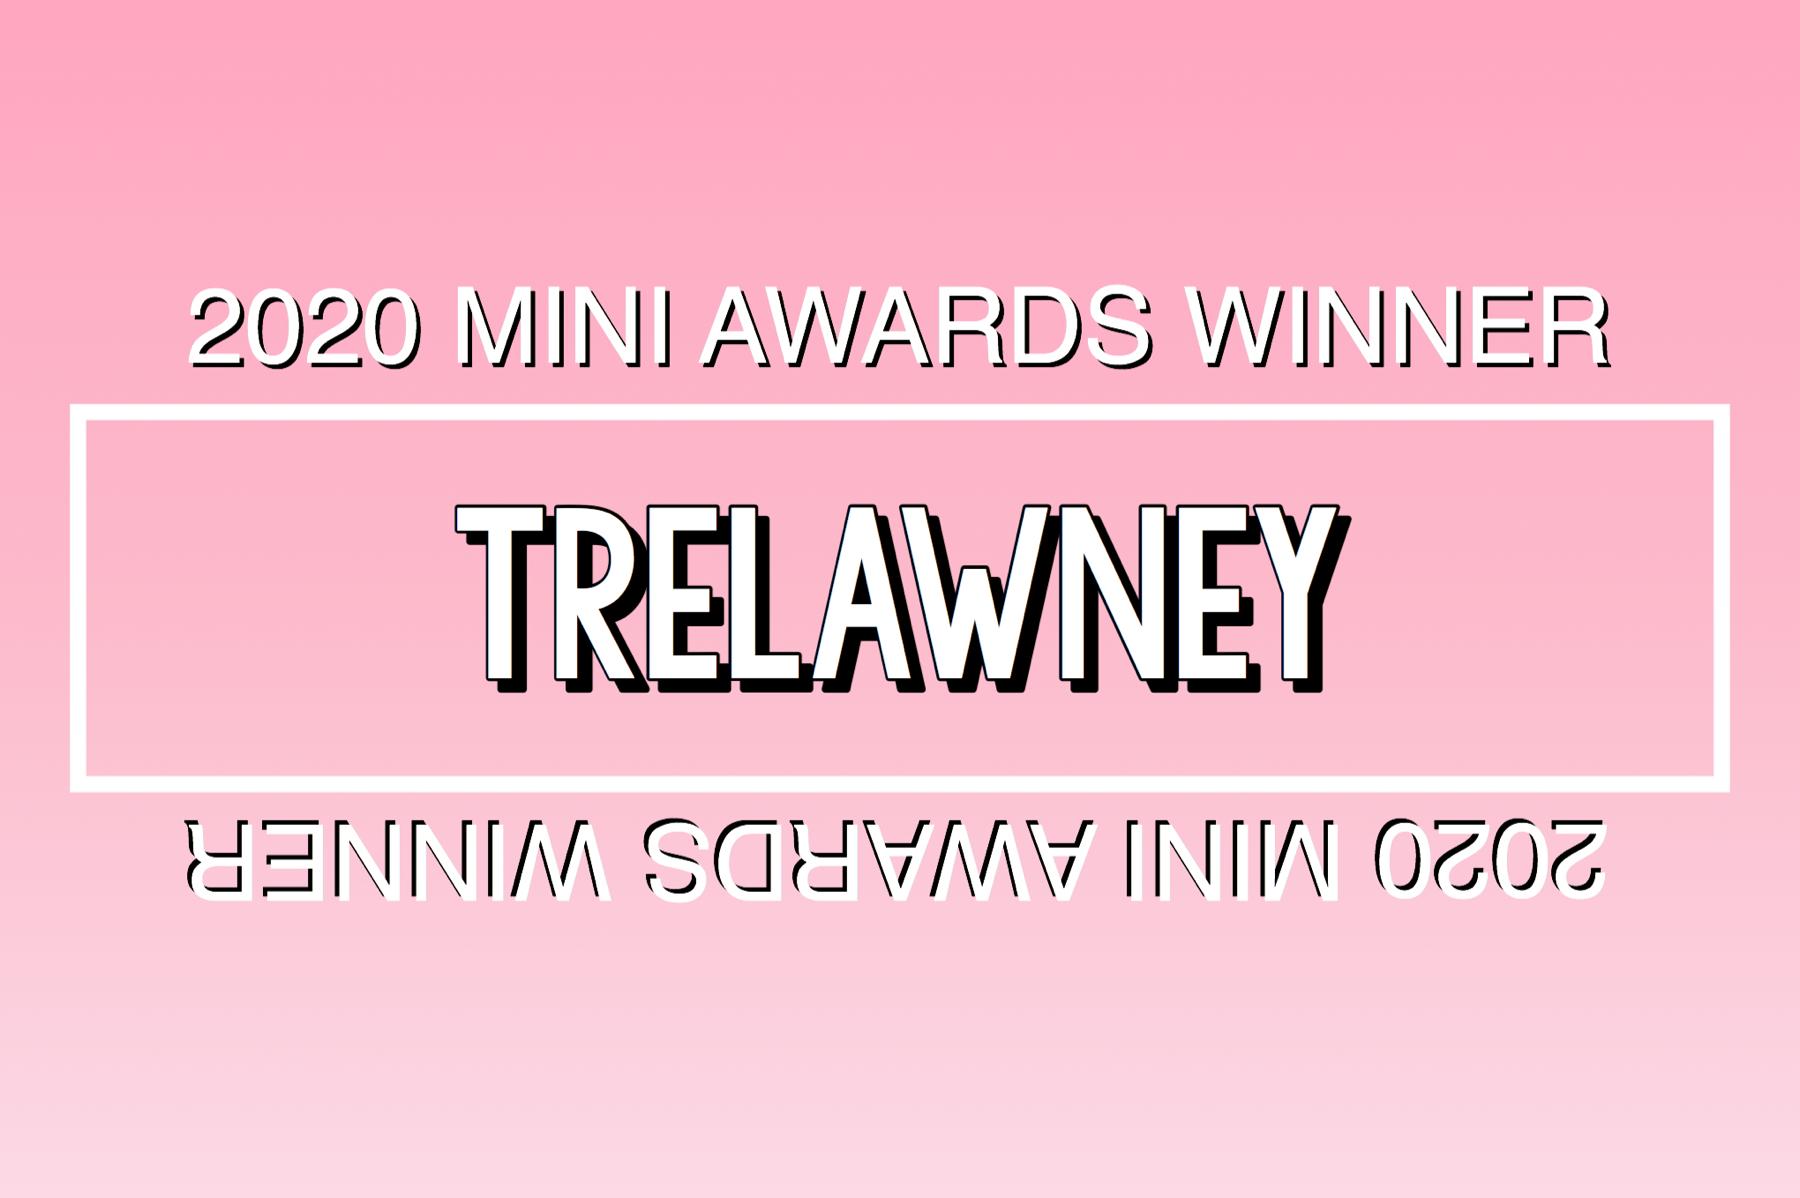 2020 Mini Awards Winner @trelawney!